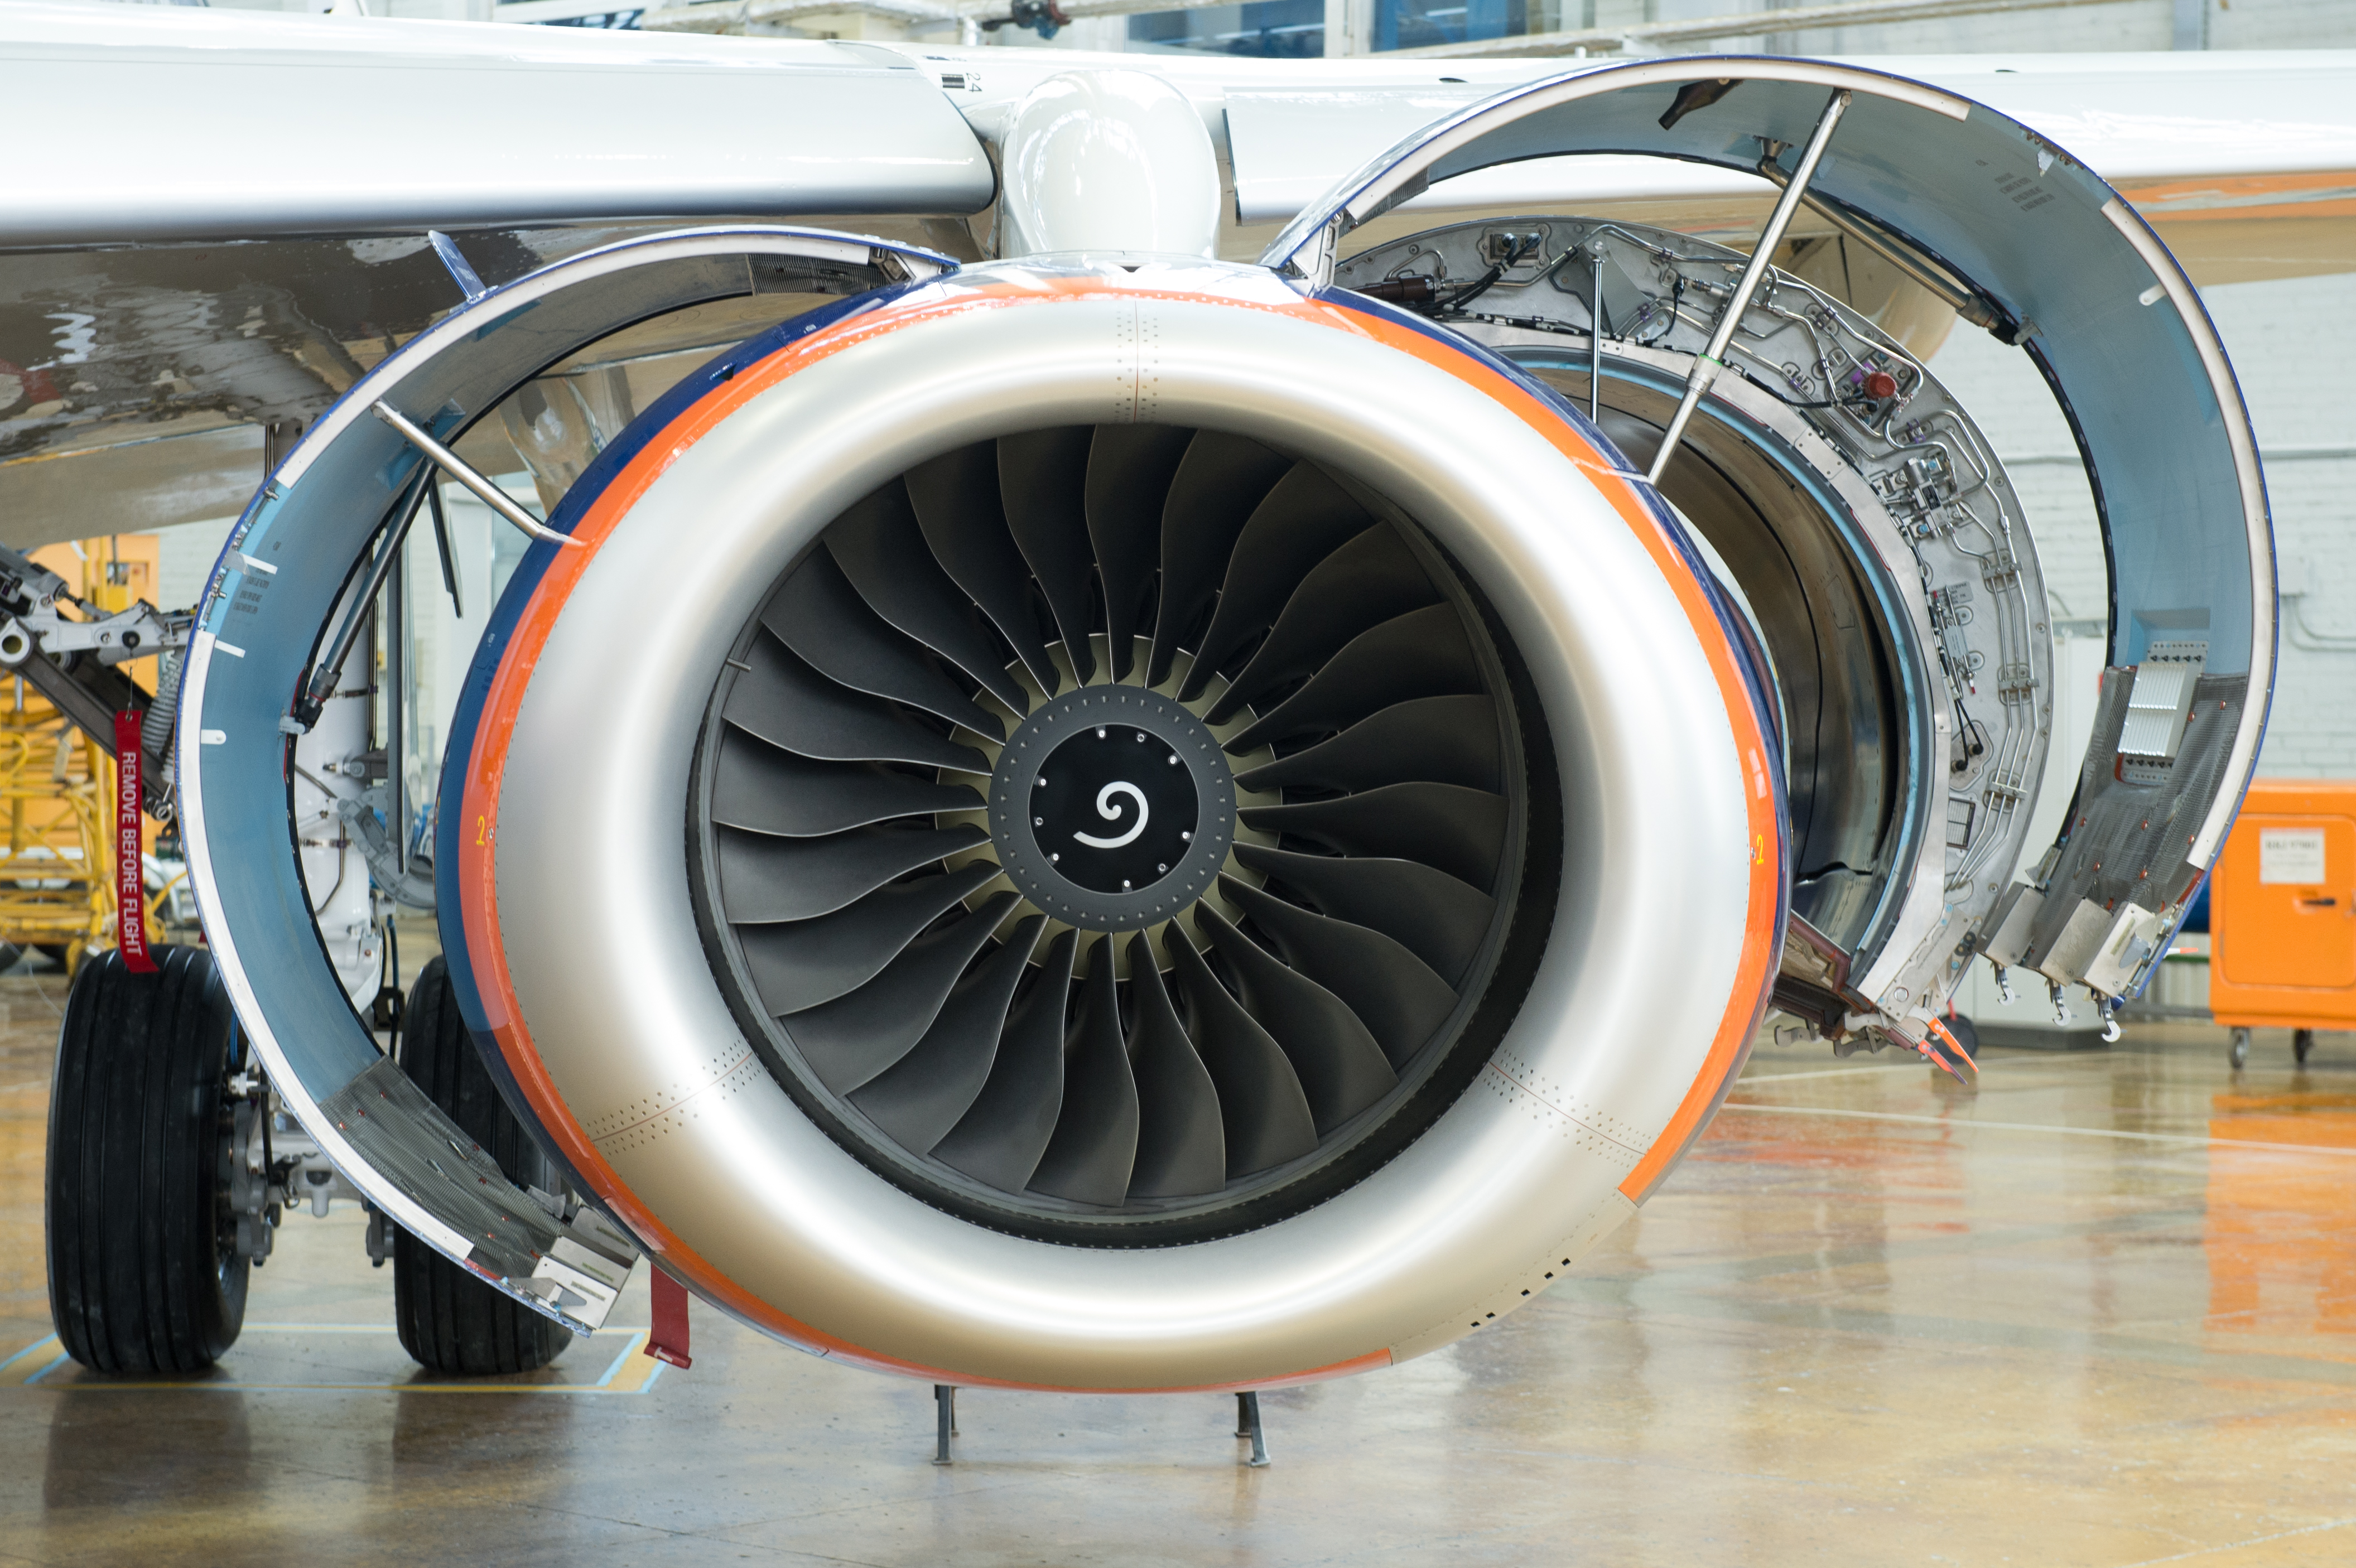 Двигатели SaM146 отработали на авиалайнерах «Аэрофлота» свыше 300 тысяч часов